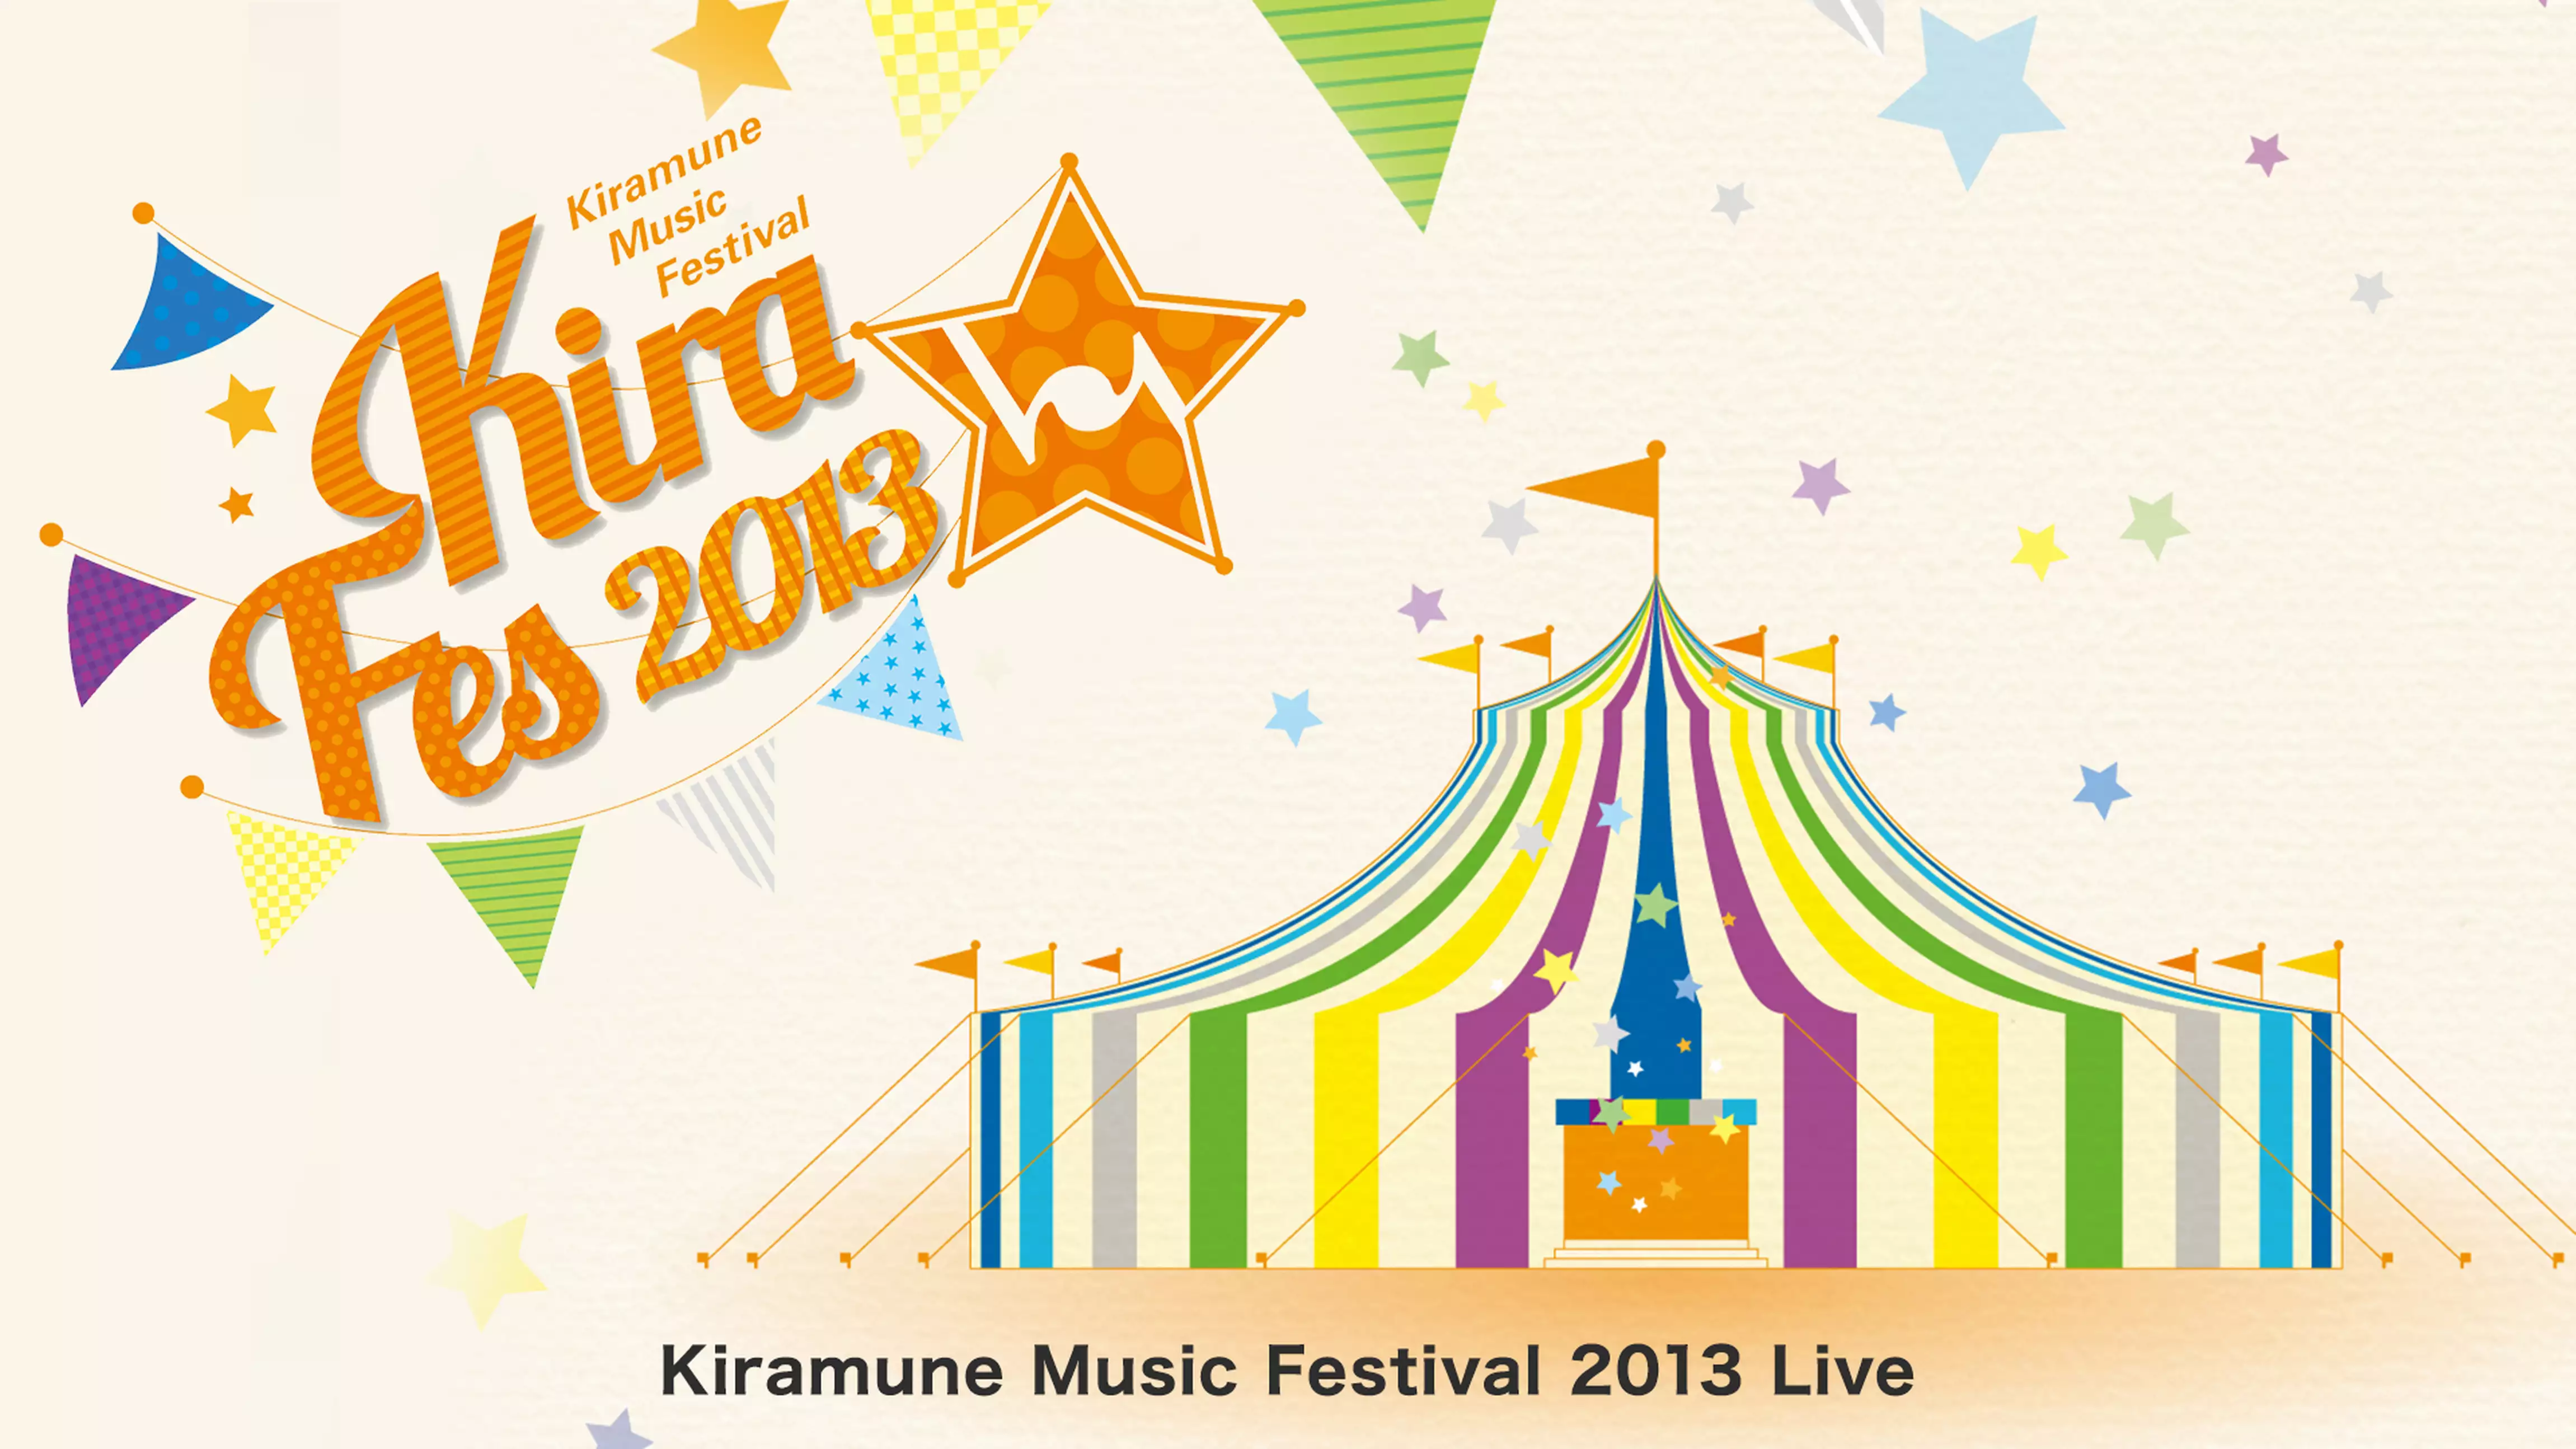 Kiramune Music Festival 2013 Live